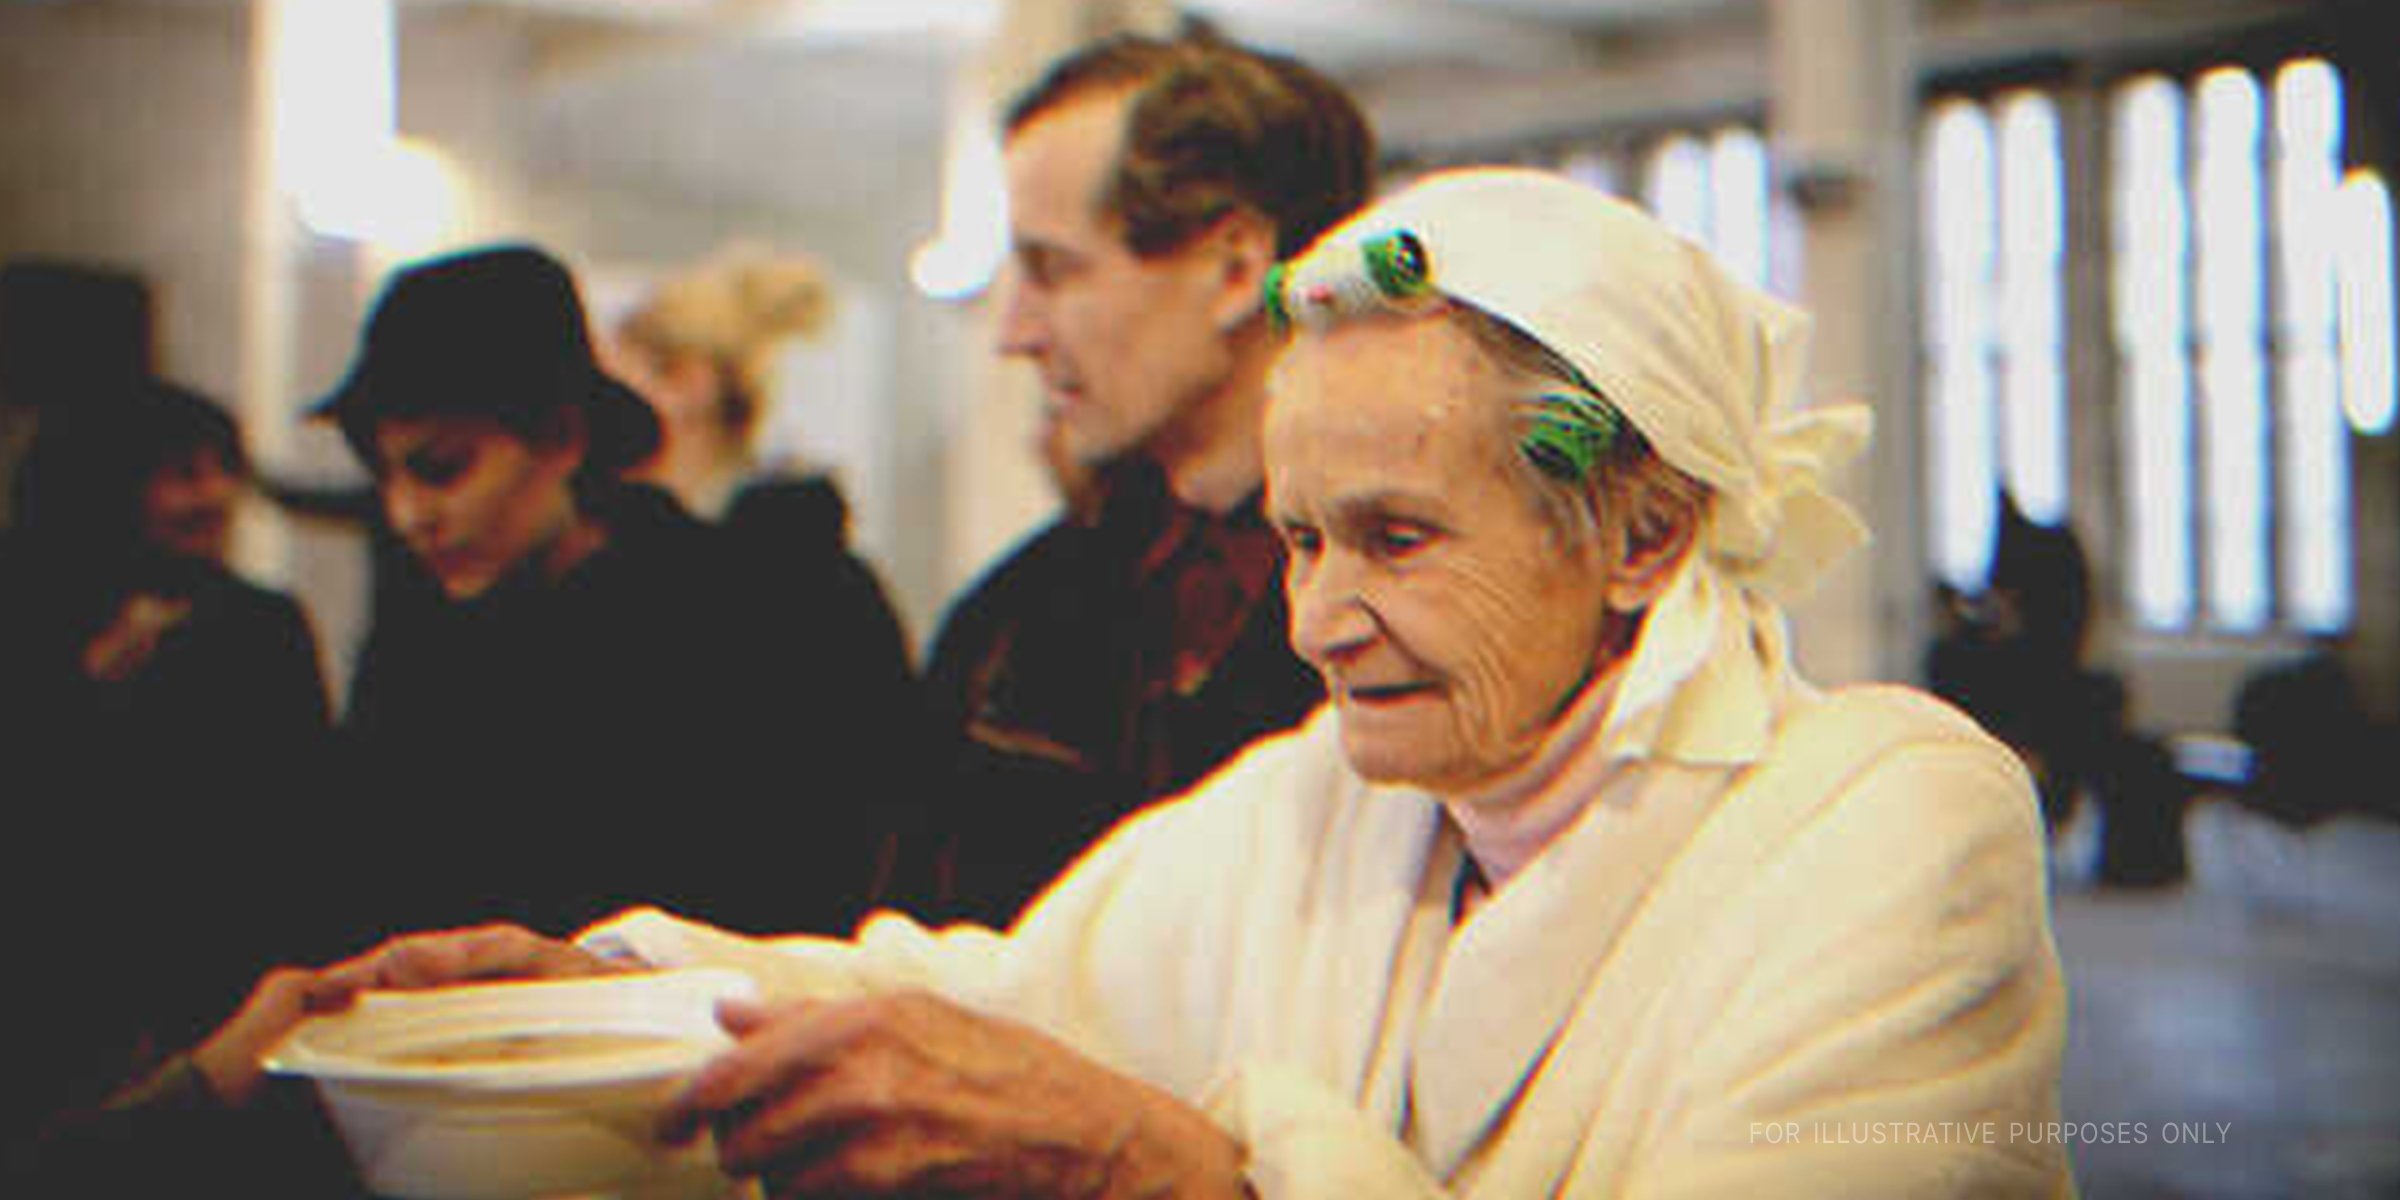 Eine Frau hält eine Suppenschüssel | Quelle: Getty Images